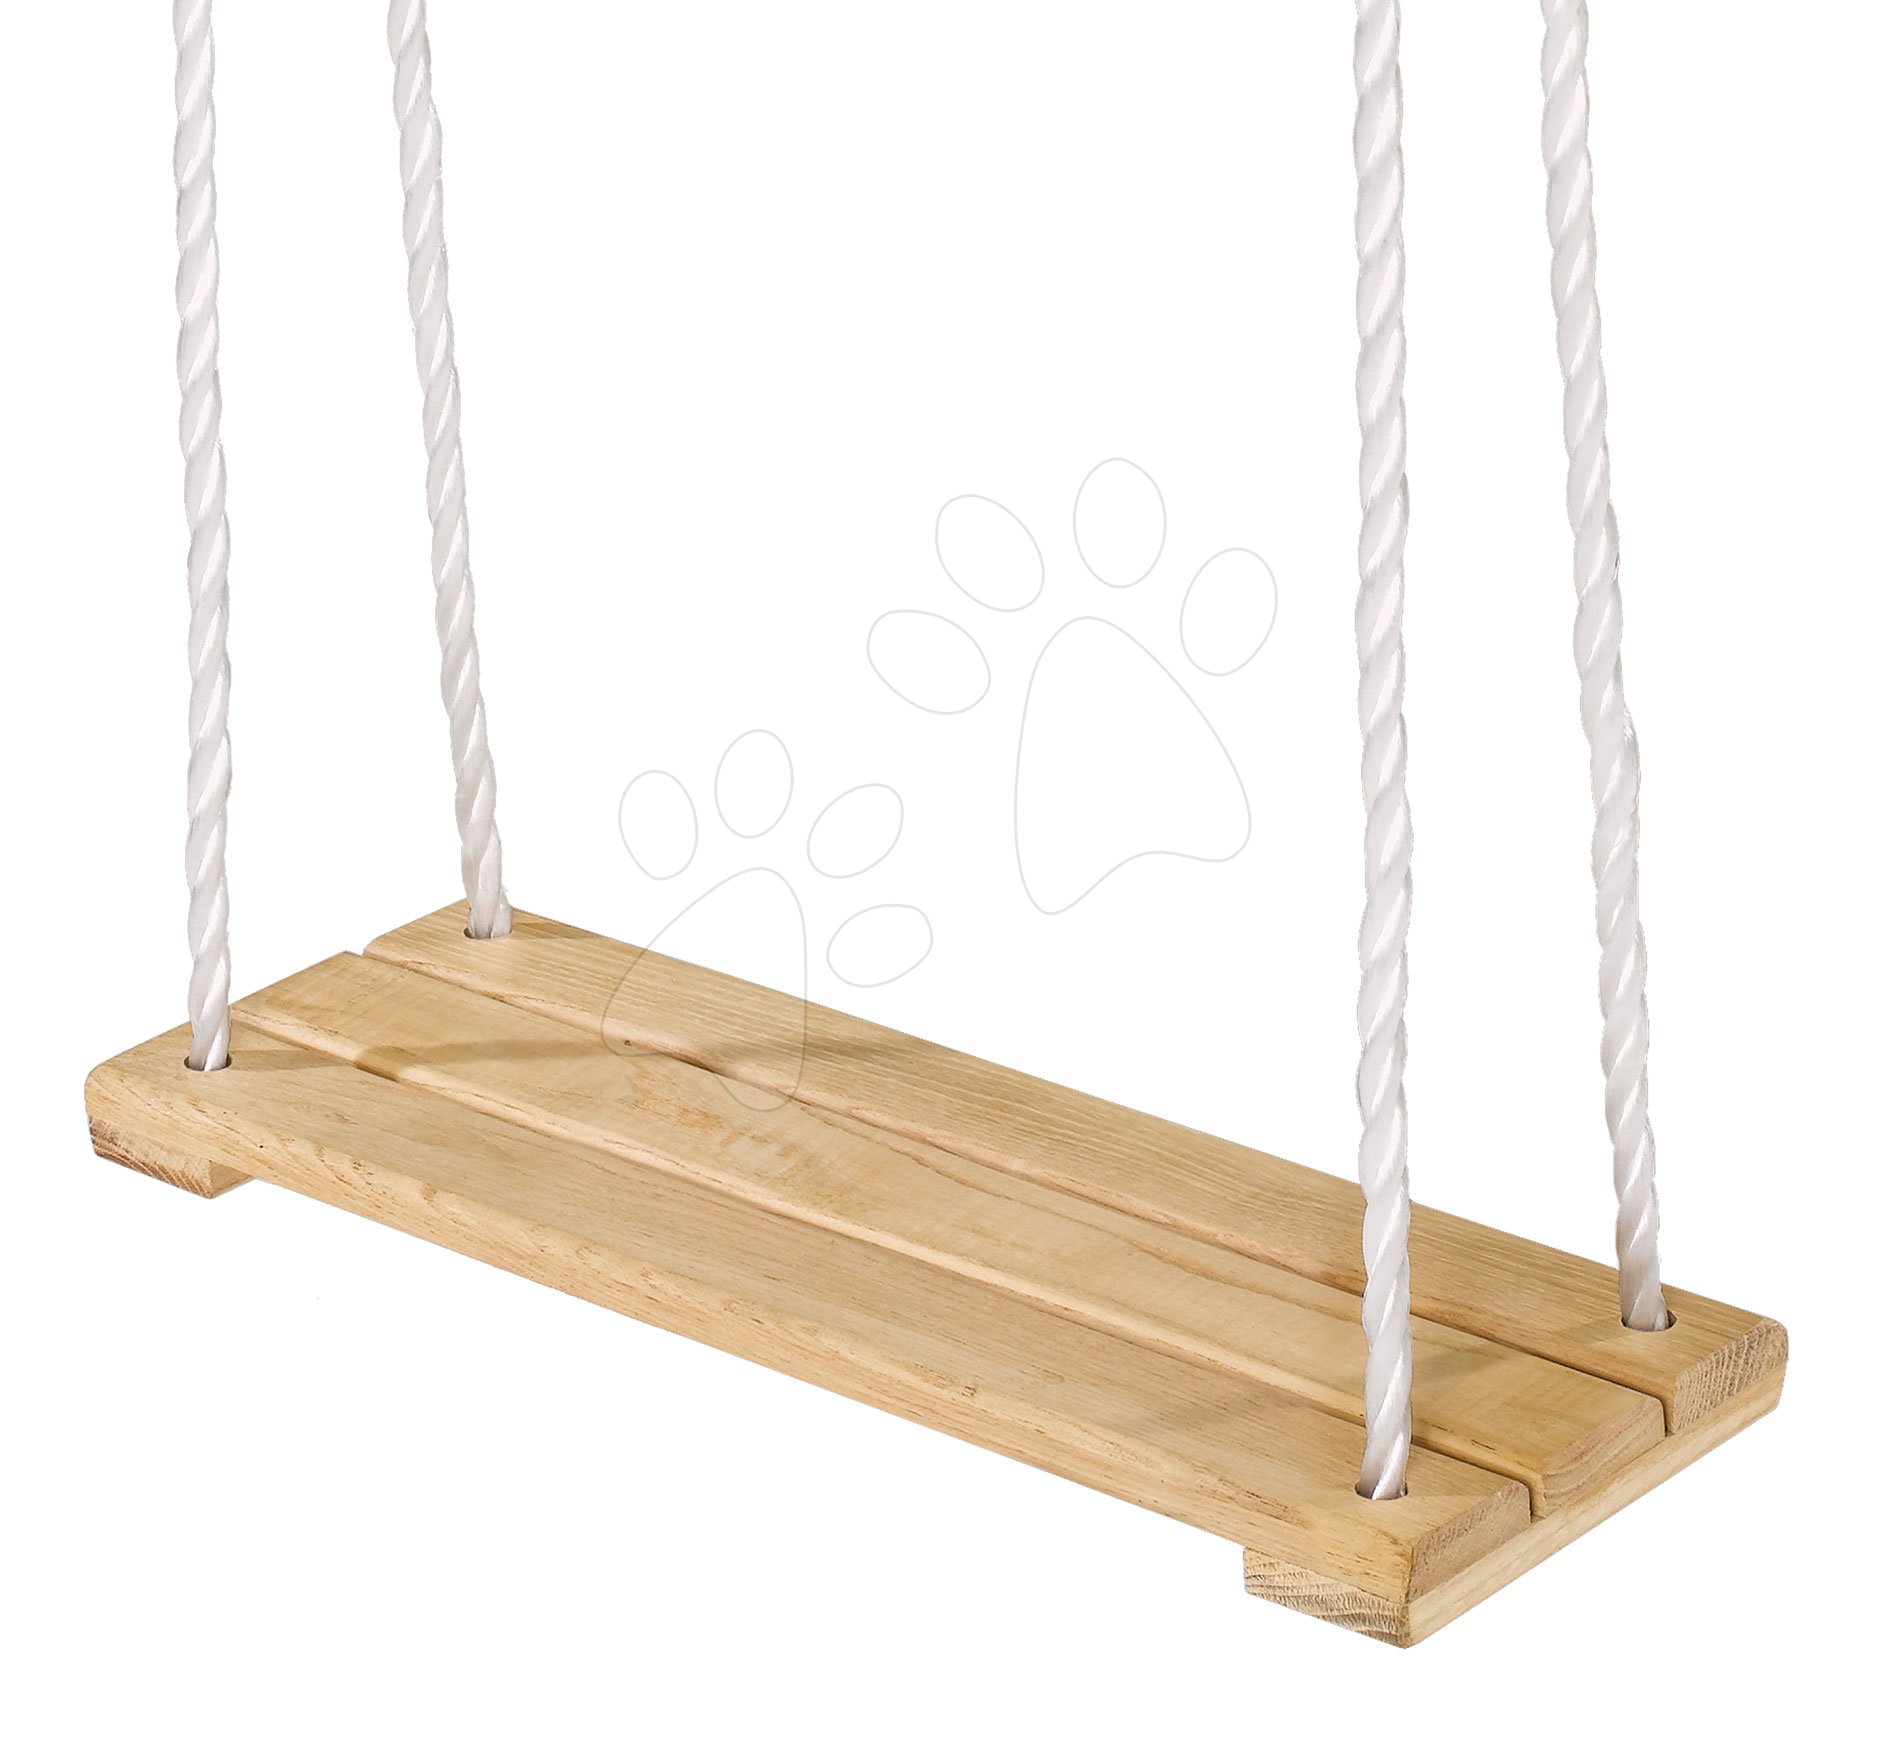 Dětské houpačky - Dřevěná houpačka Plank Swing Outdoor Eichhorn přírodní 140–210 cm délka 40*14 cm a 60 kg nosnost